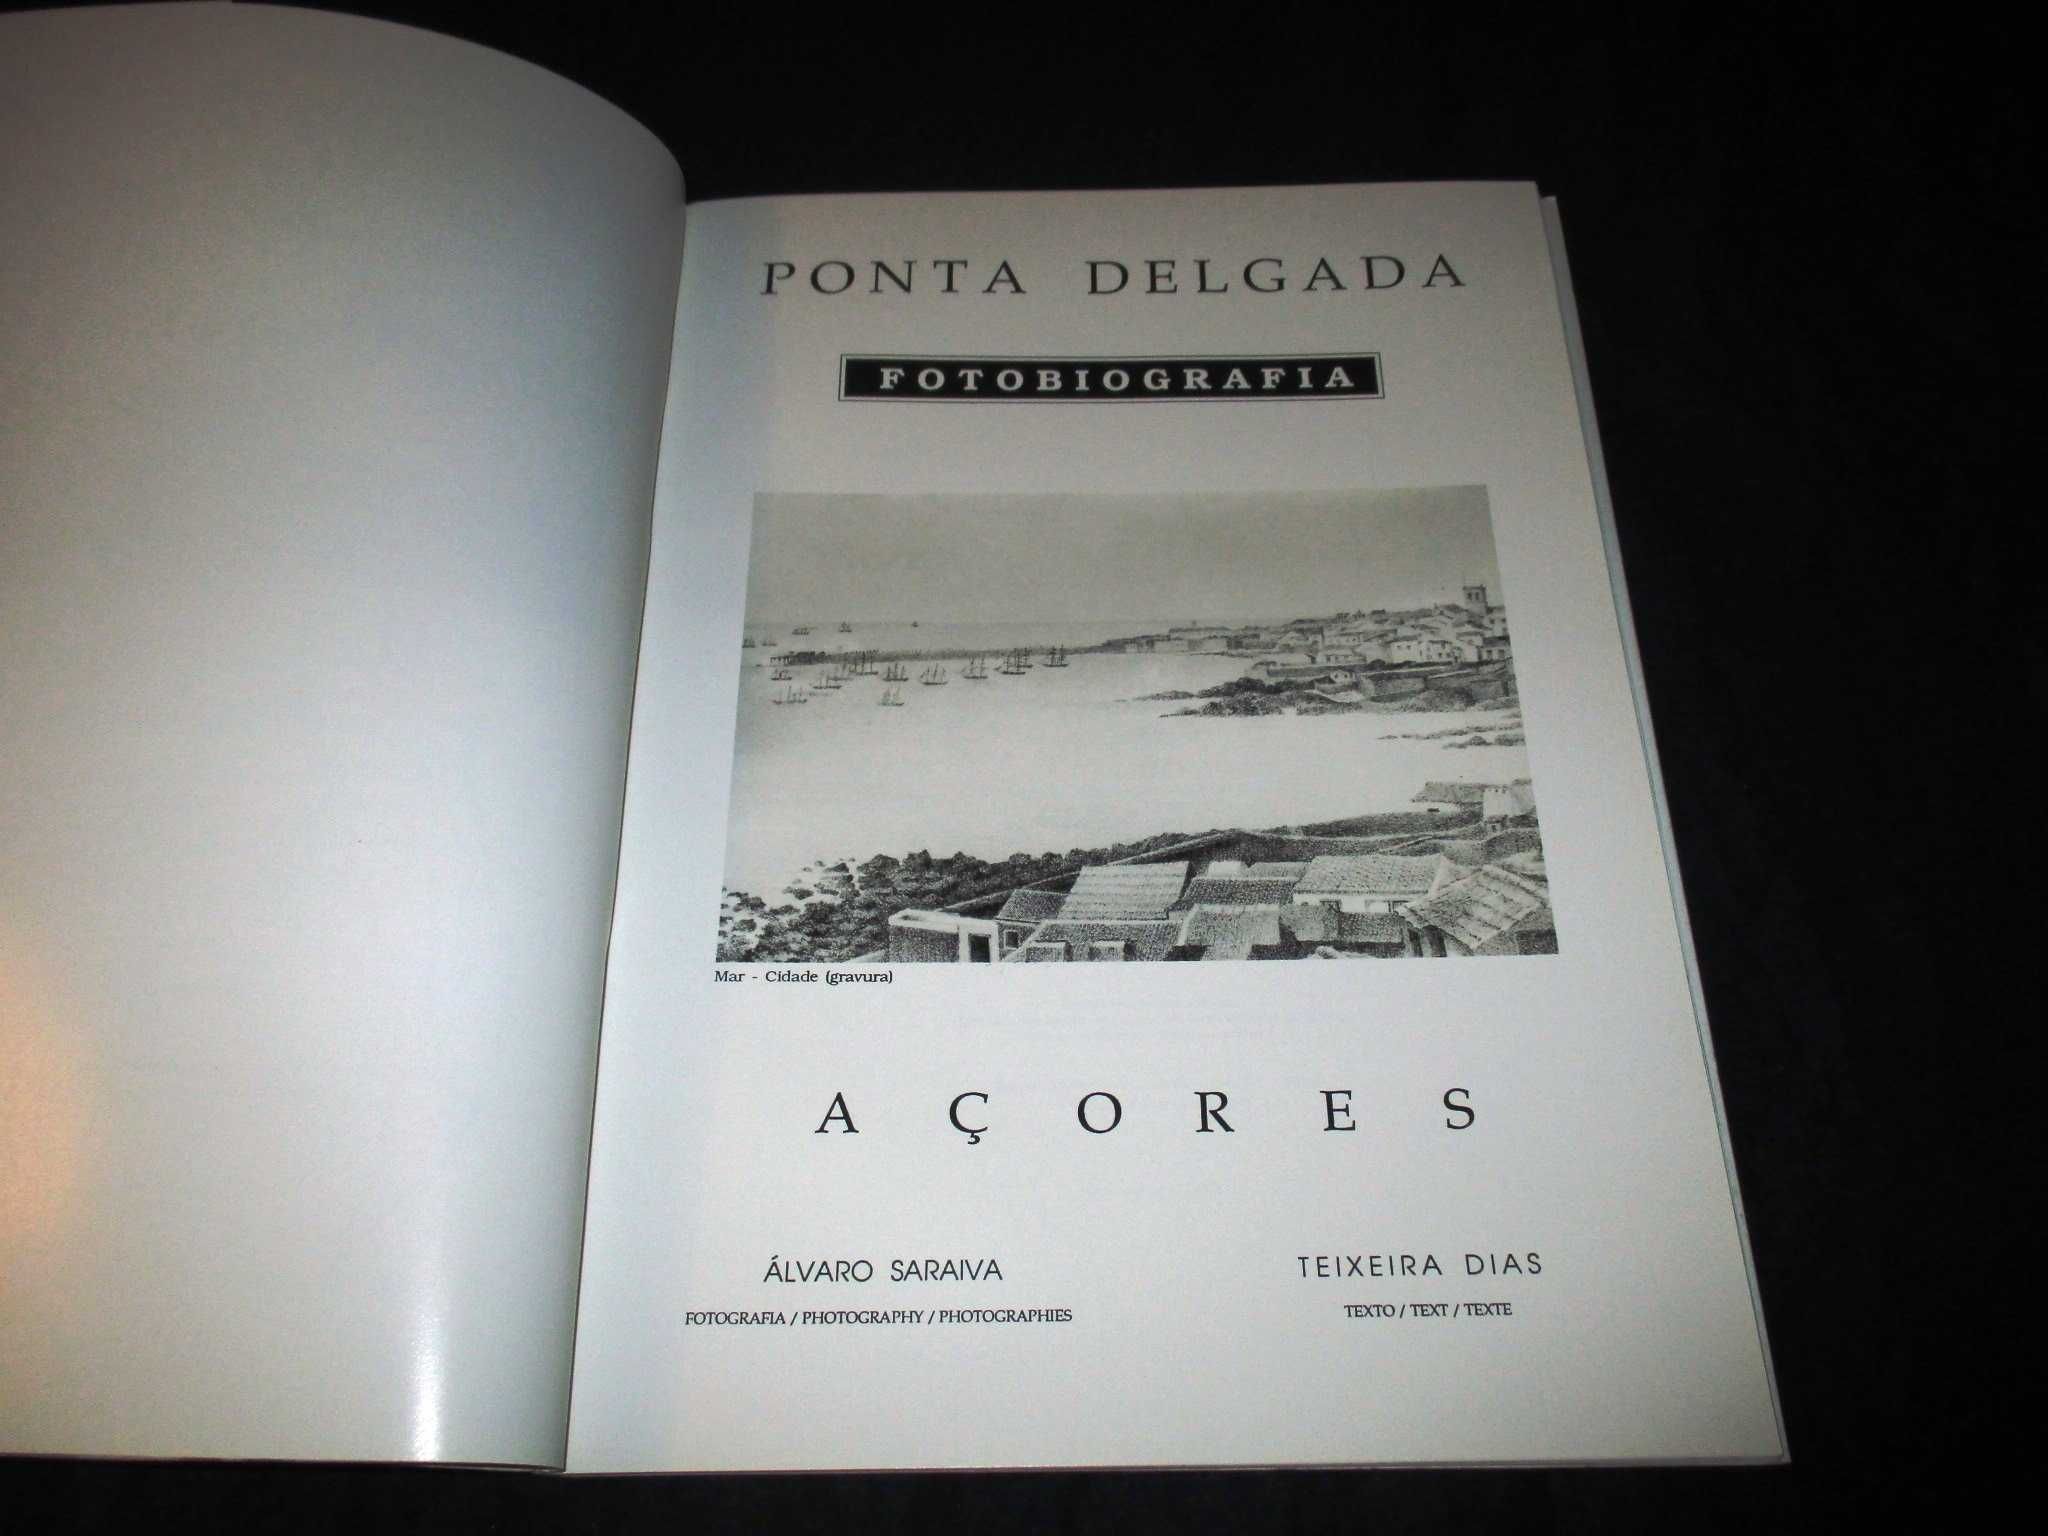 Livro Ponta Delgada Fotobiografia Açores Álvaro Saraiva Teixeira Dias